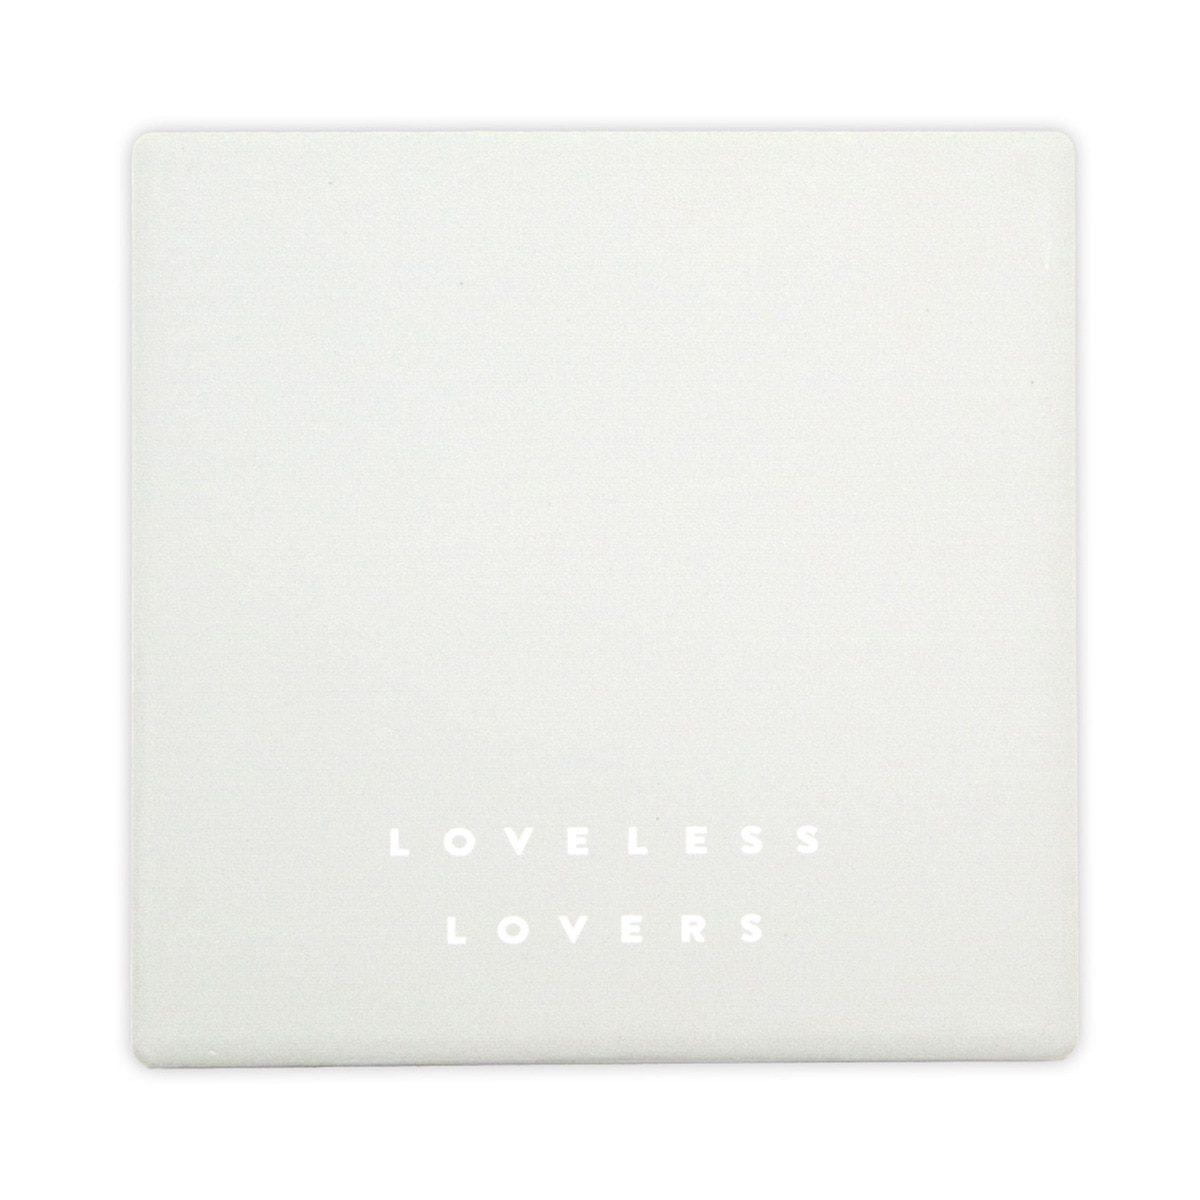 「アイのない恋人たち」LOVELESS LOVERS 吸水セラミックコースター(2個セット)